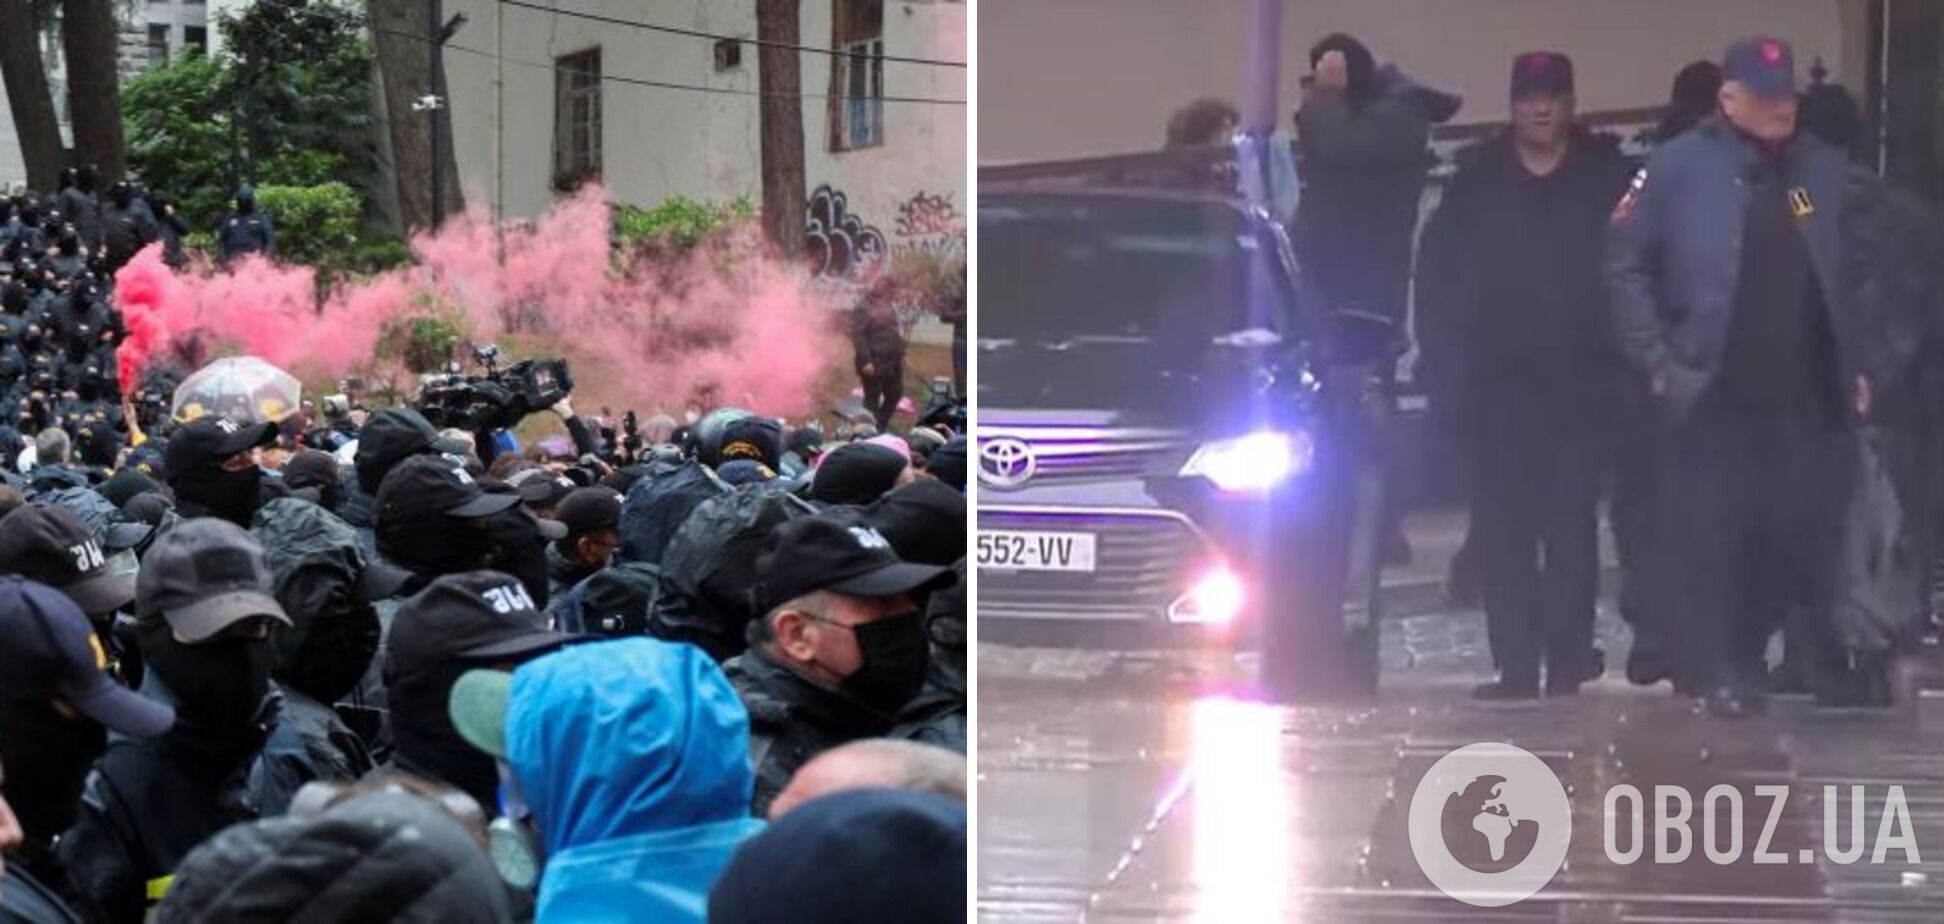 В Грузии начали разгон митинга против закона об "иноагентах", правоохранители применили силу. Фото и видео